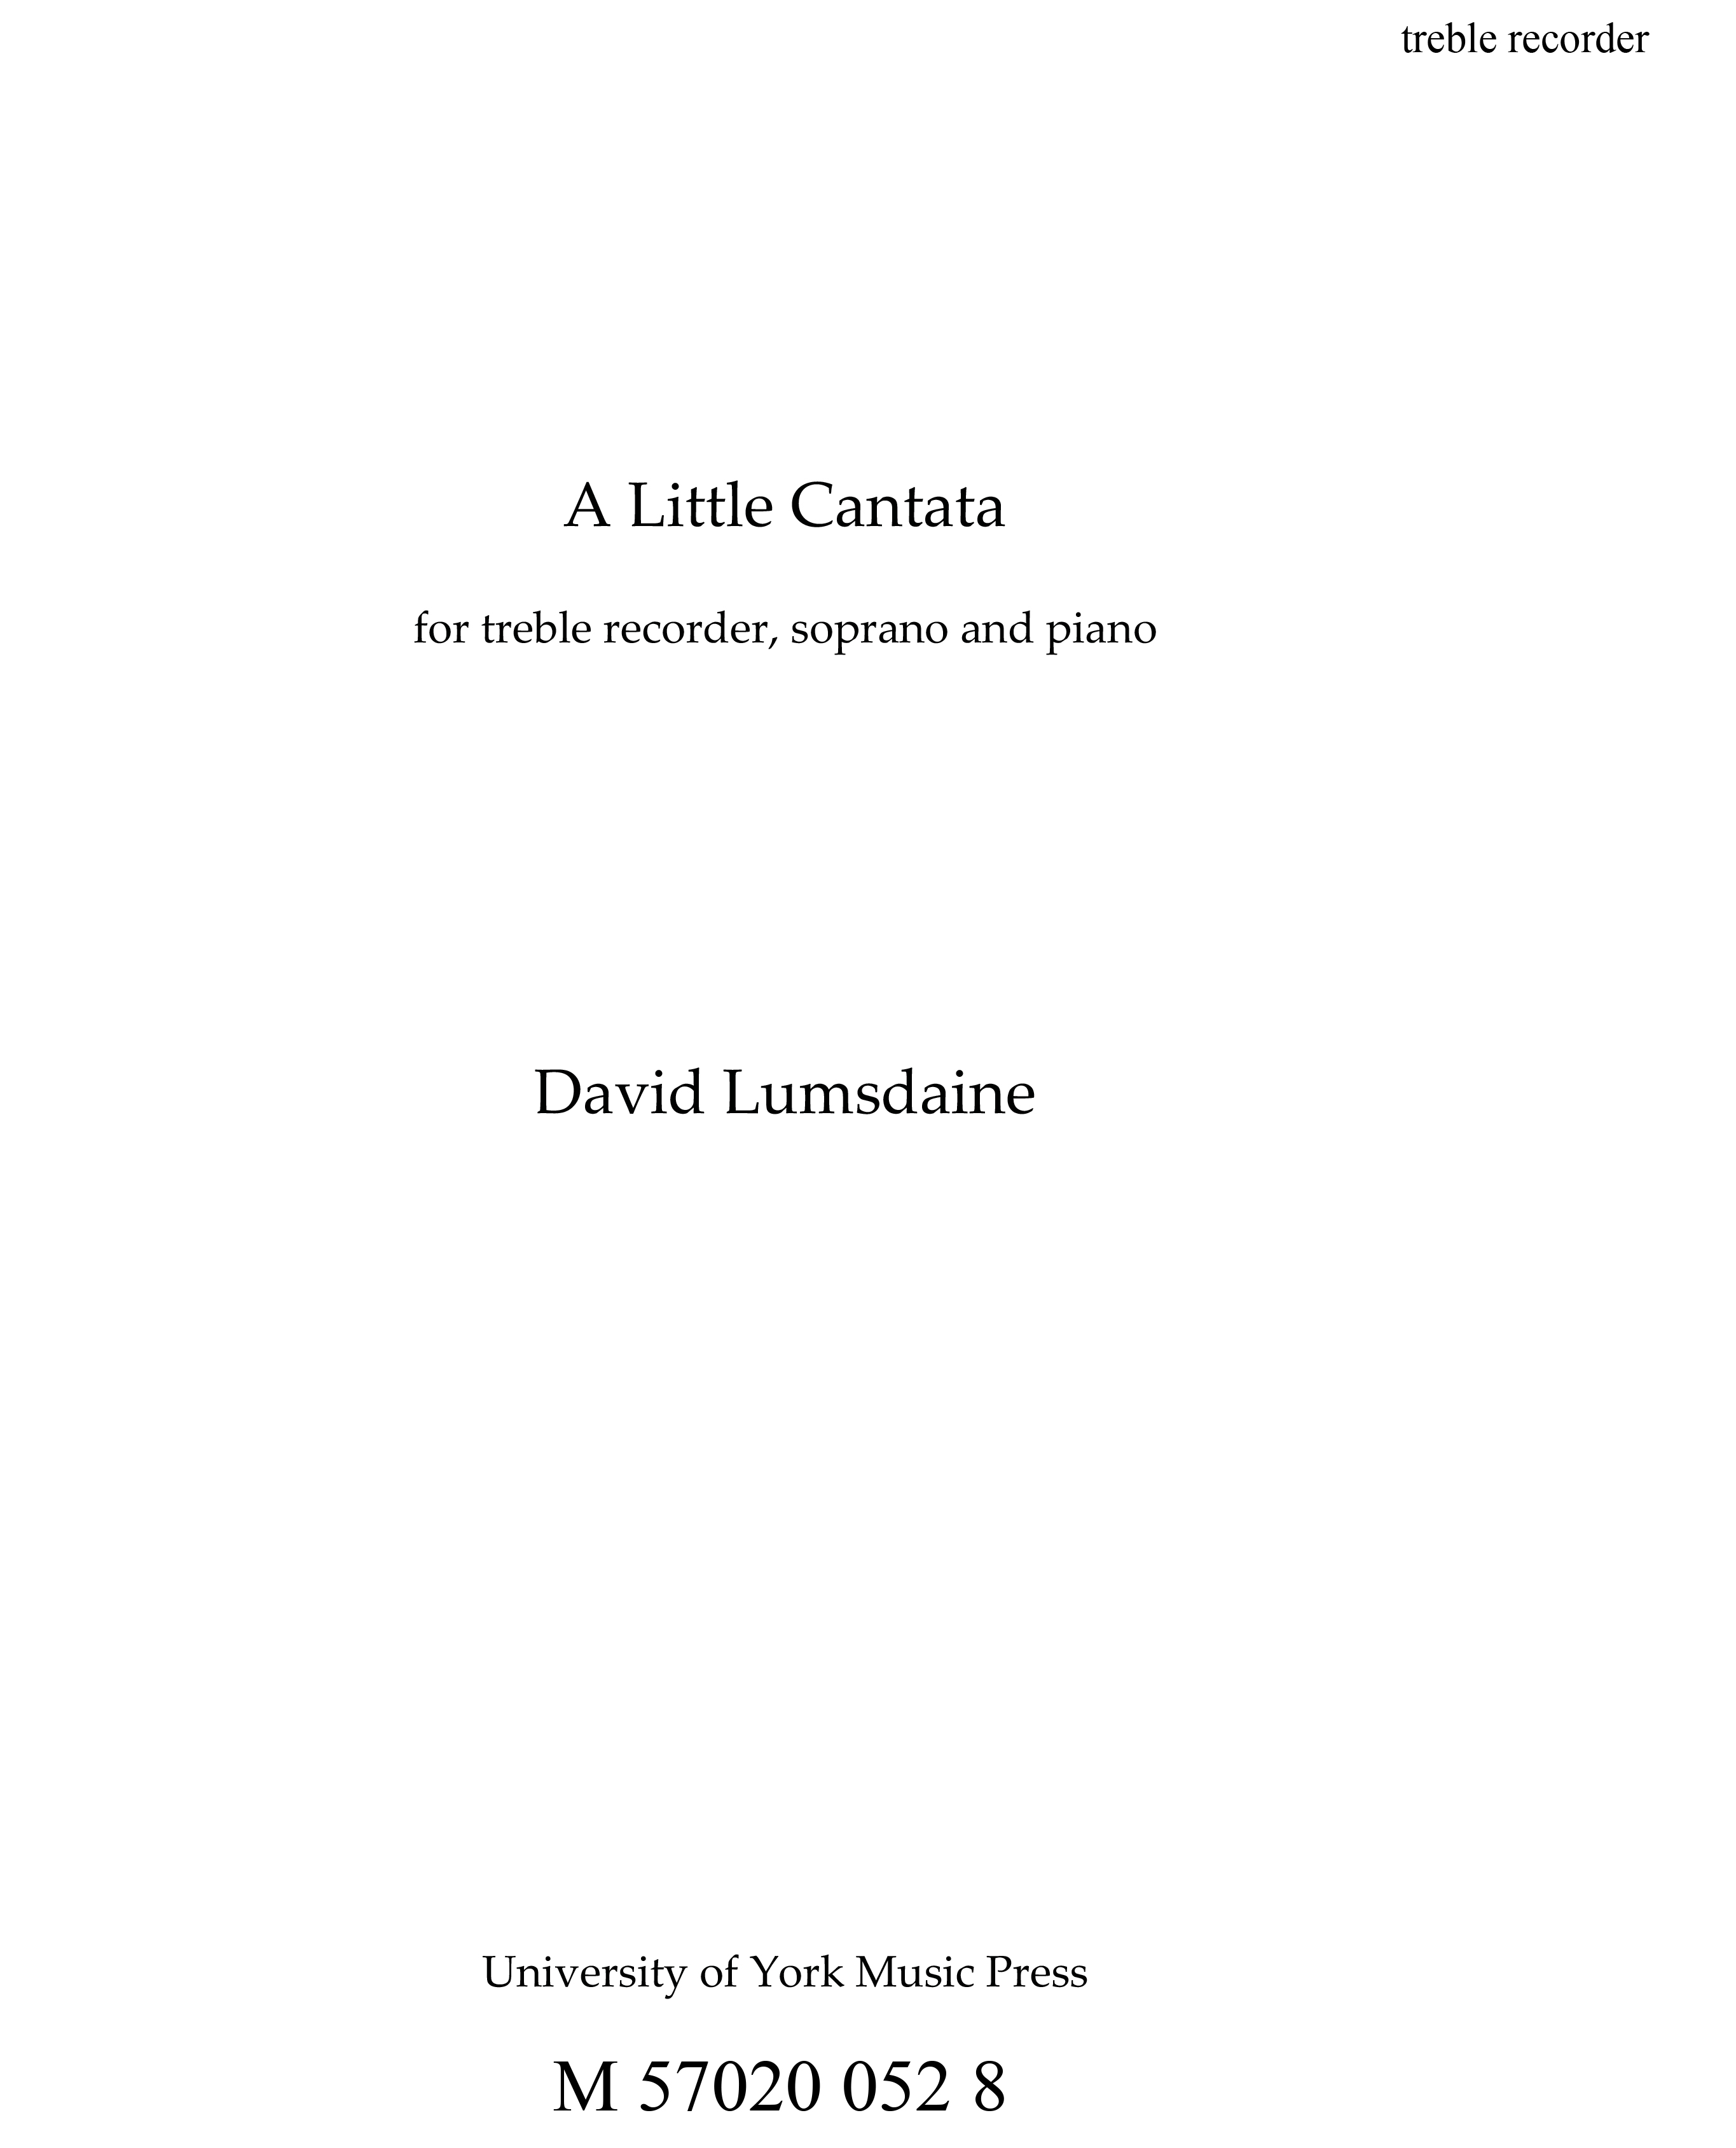 David Lumsdaine: A Little Cantata: Soprano: Parts